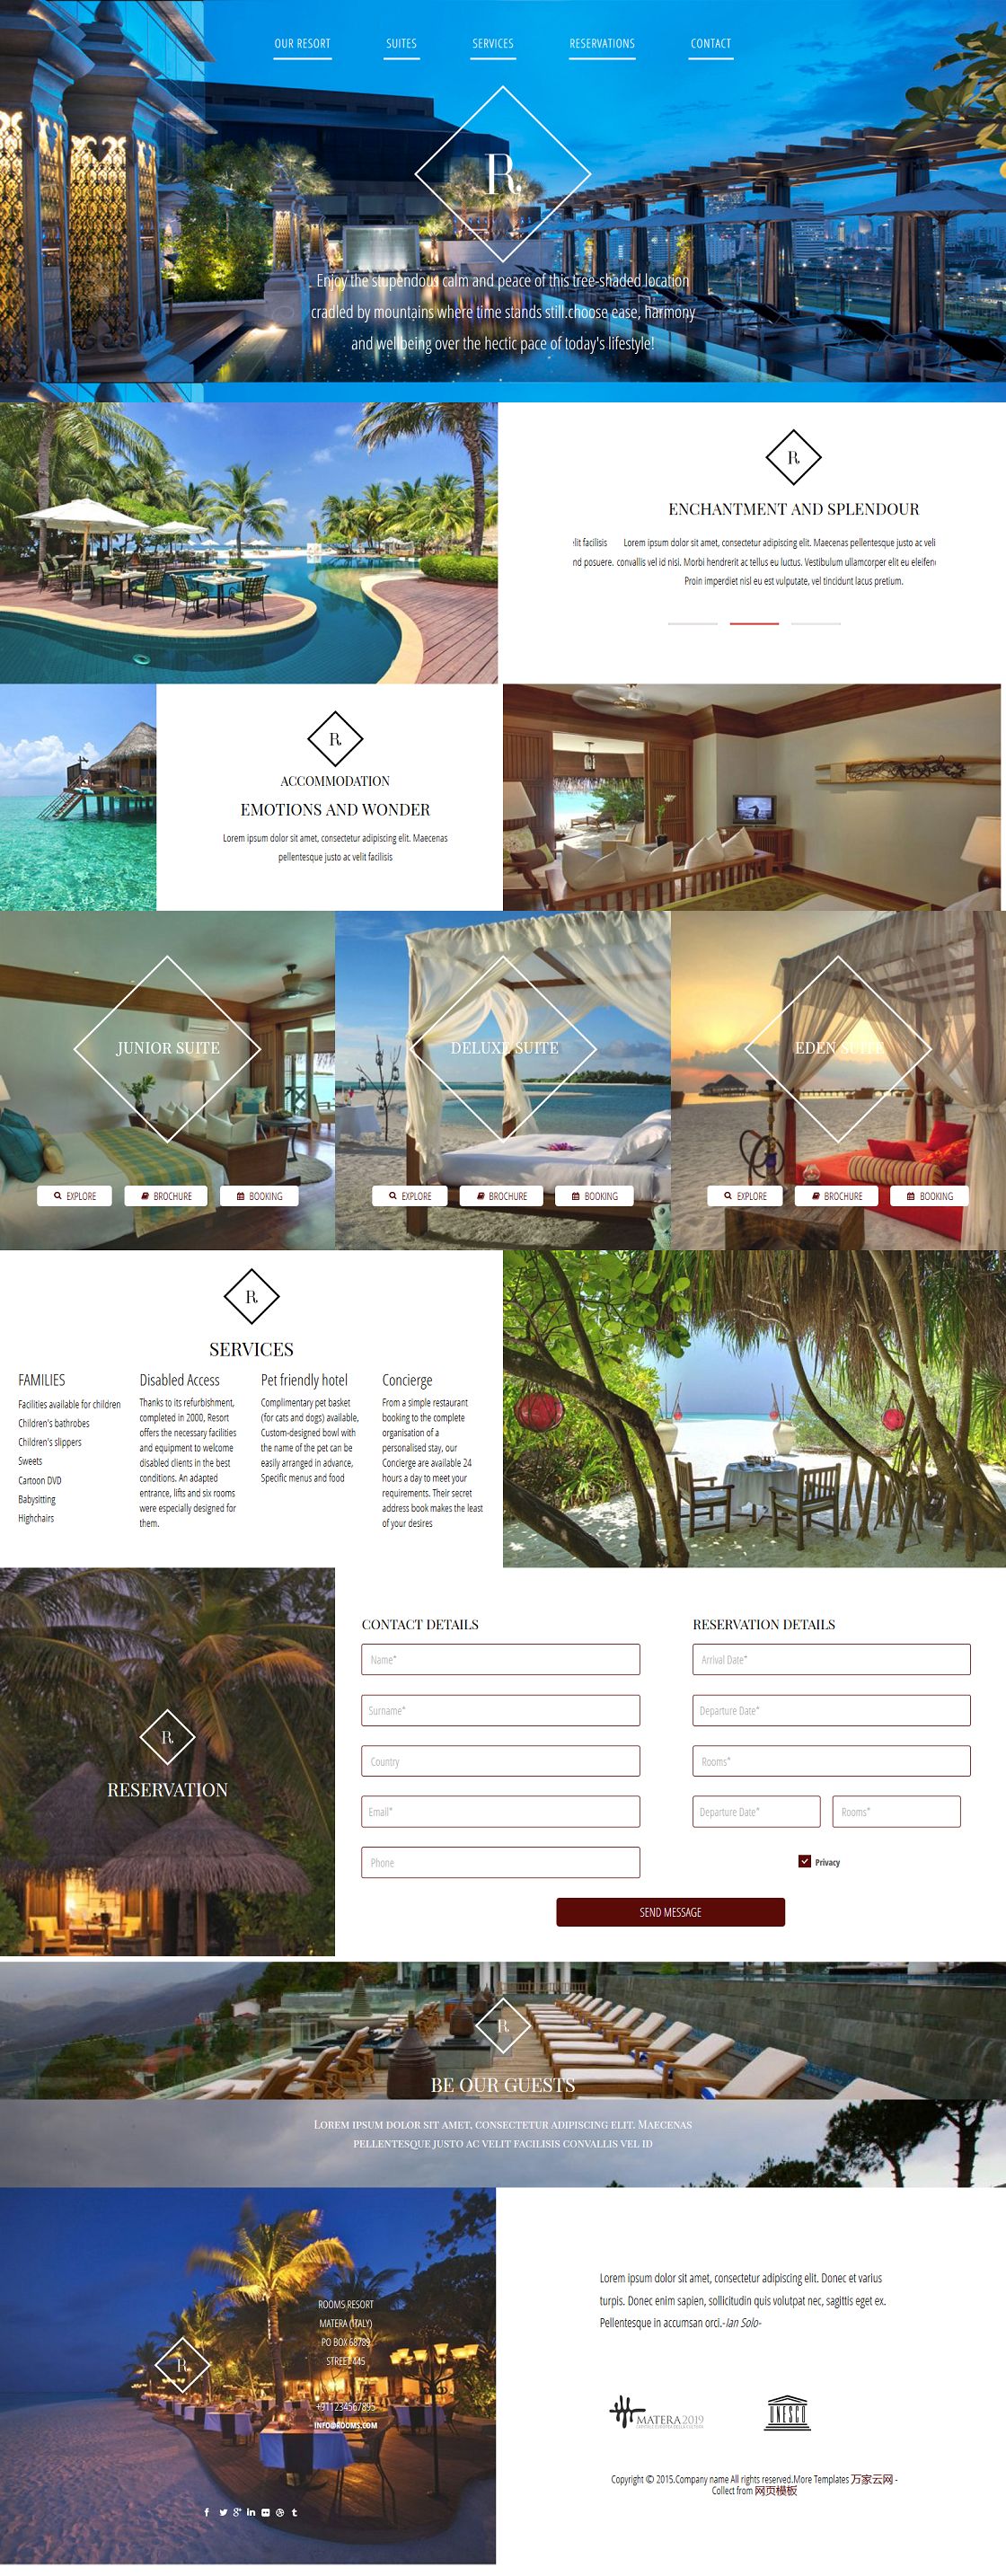 豪华海景房旅游度假酒店网站模板